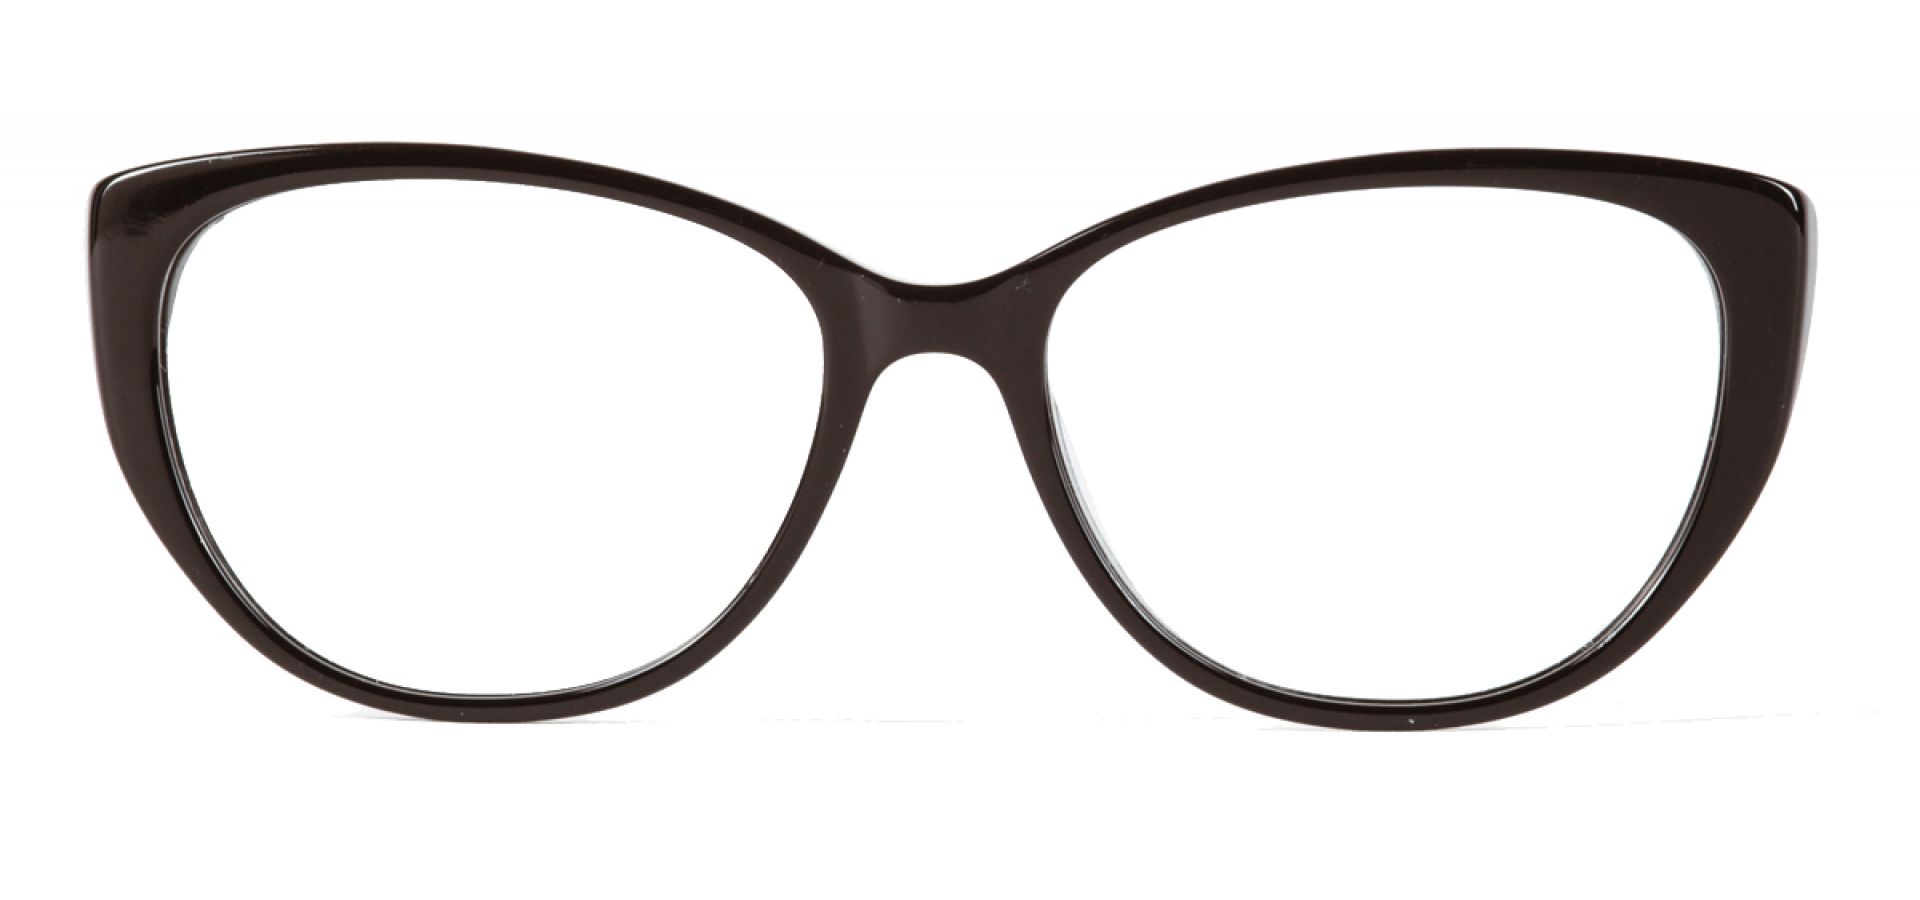 Dioptrijske naočale Ghetaldus NAOČALE ZA RAČUNALO GHB117: Boja: Black, Veličina: 53/16/140, Spol: ženske, Materijal: acetat